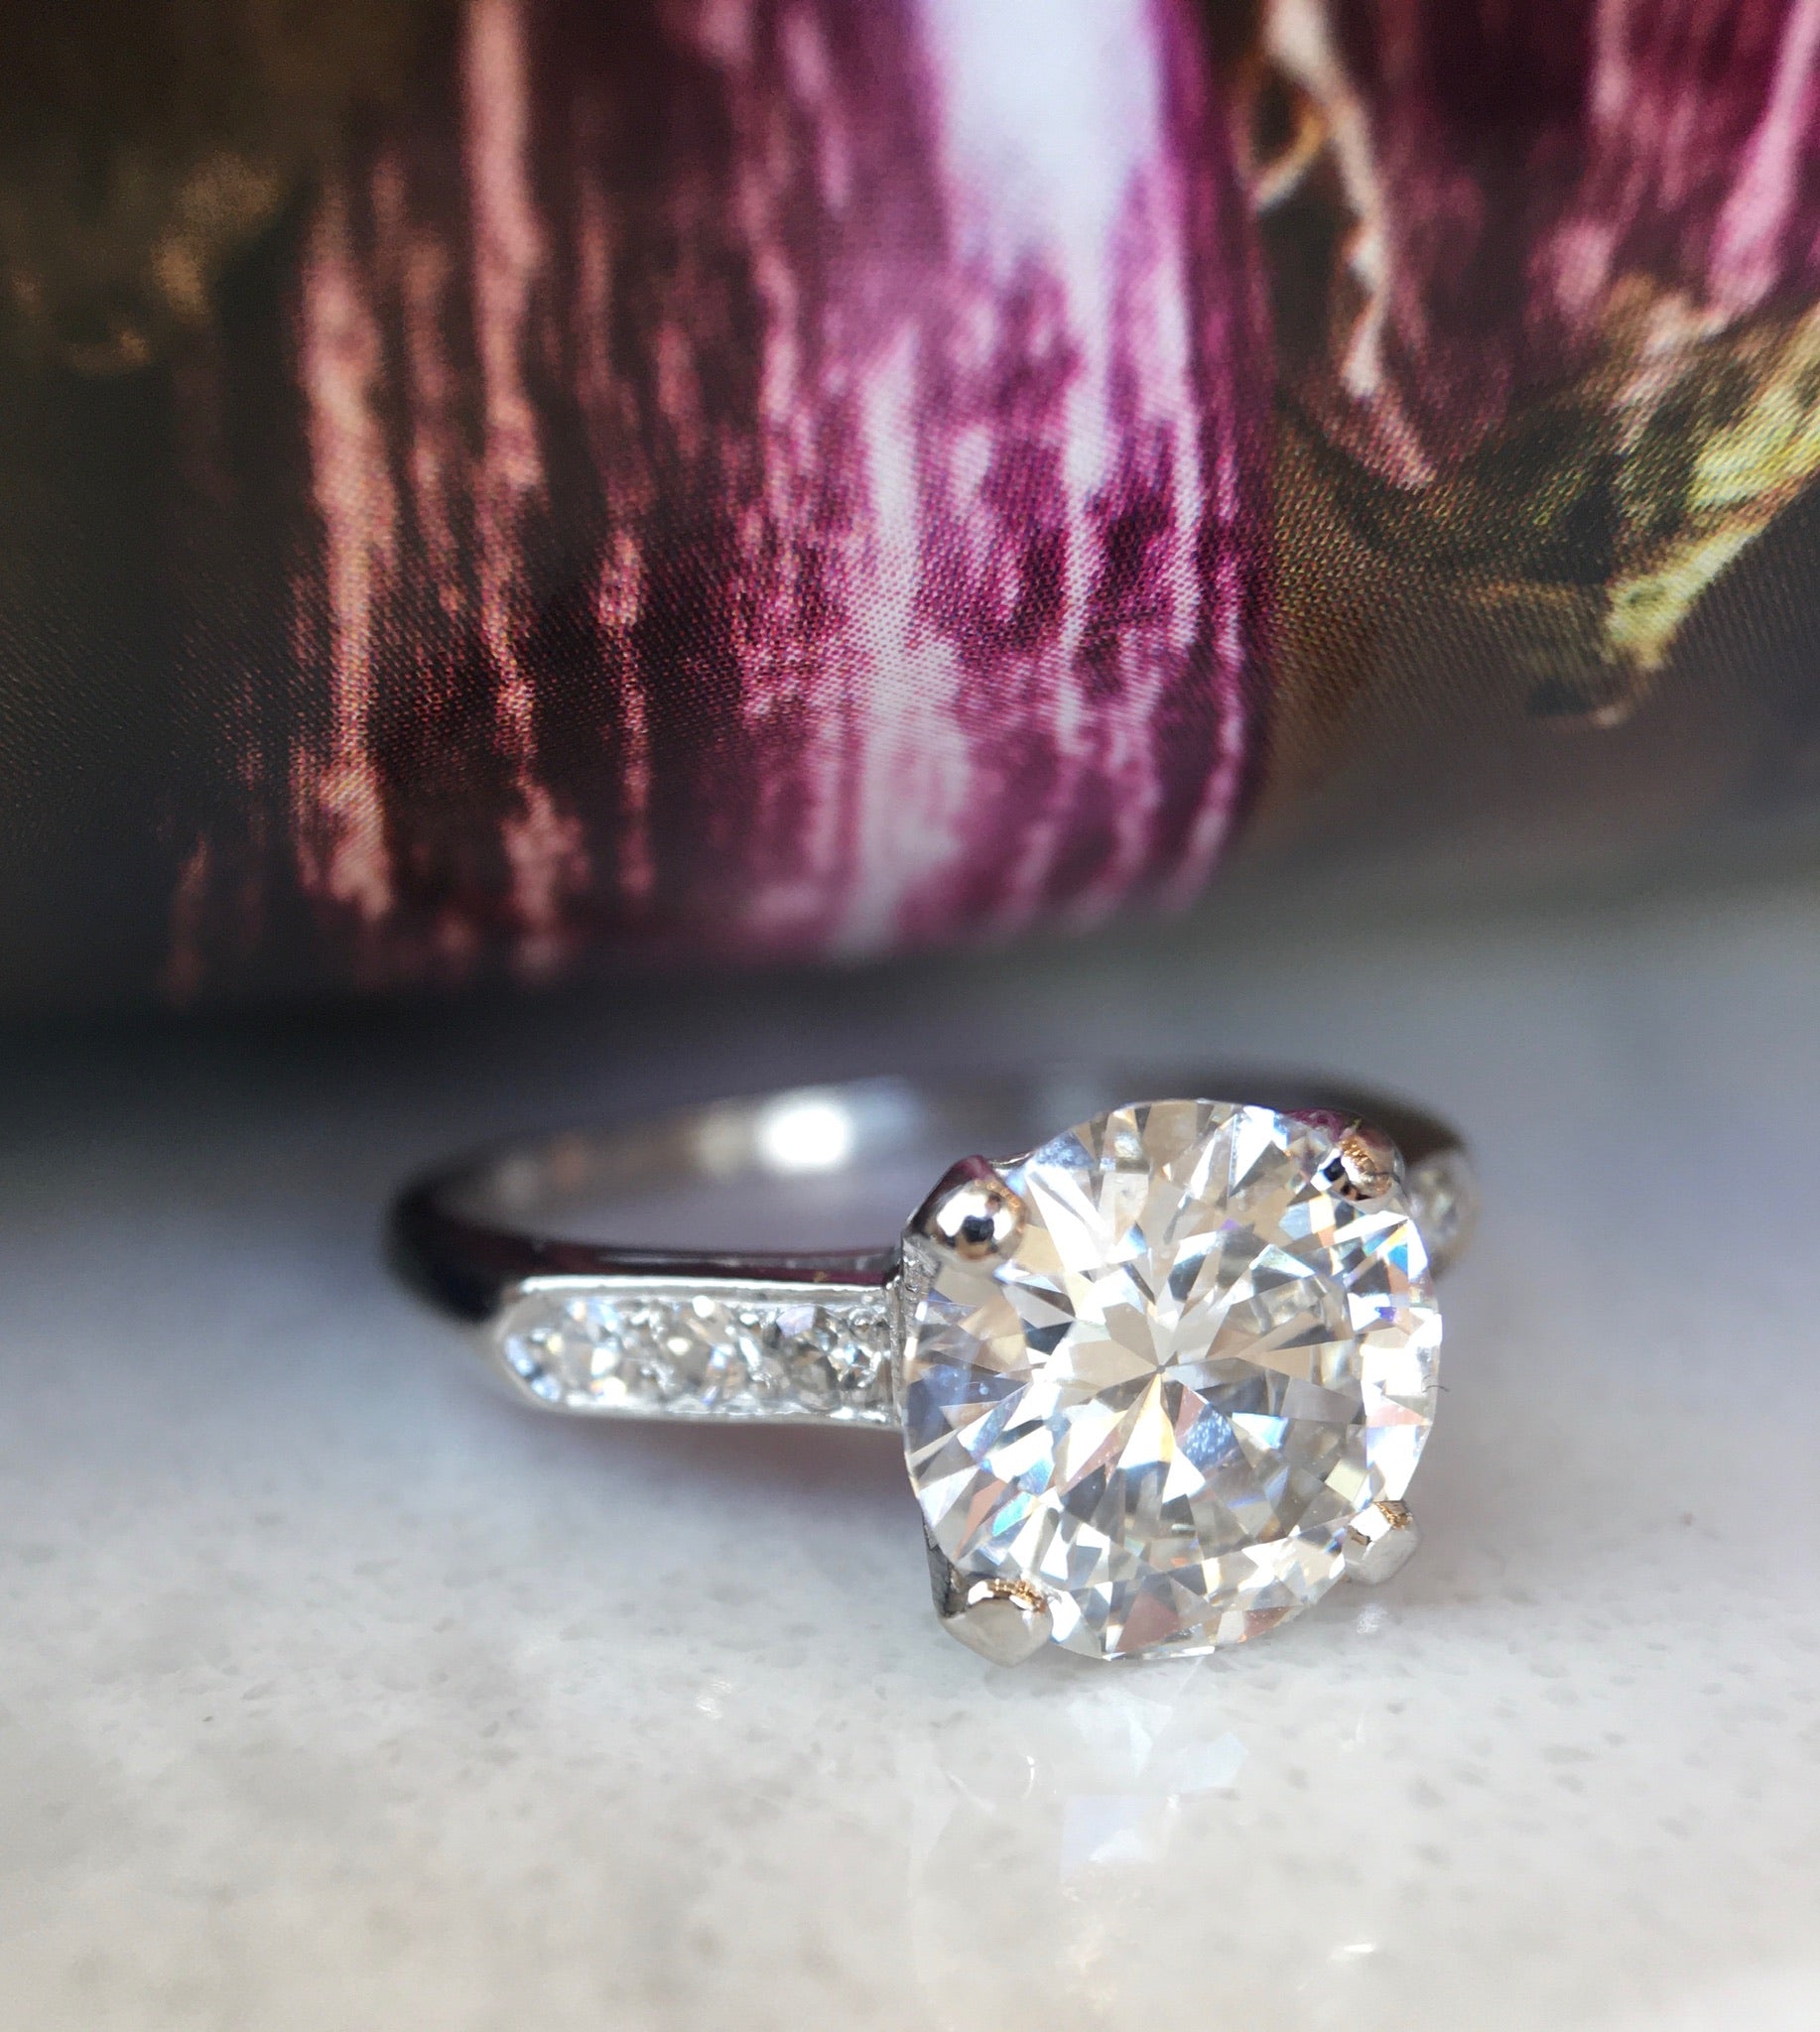 1.87 Carat Round Brilliant Cut Diamond Engagement Ring in Platinum